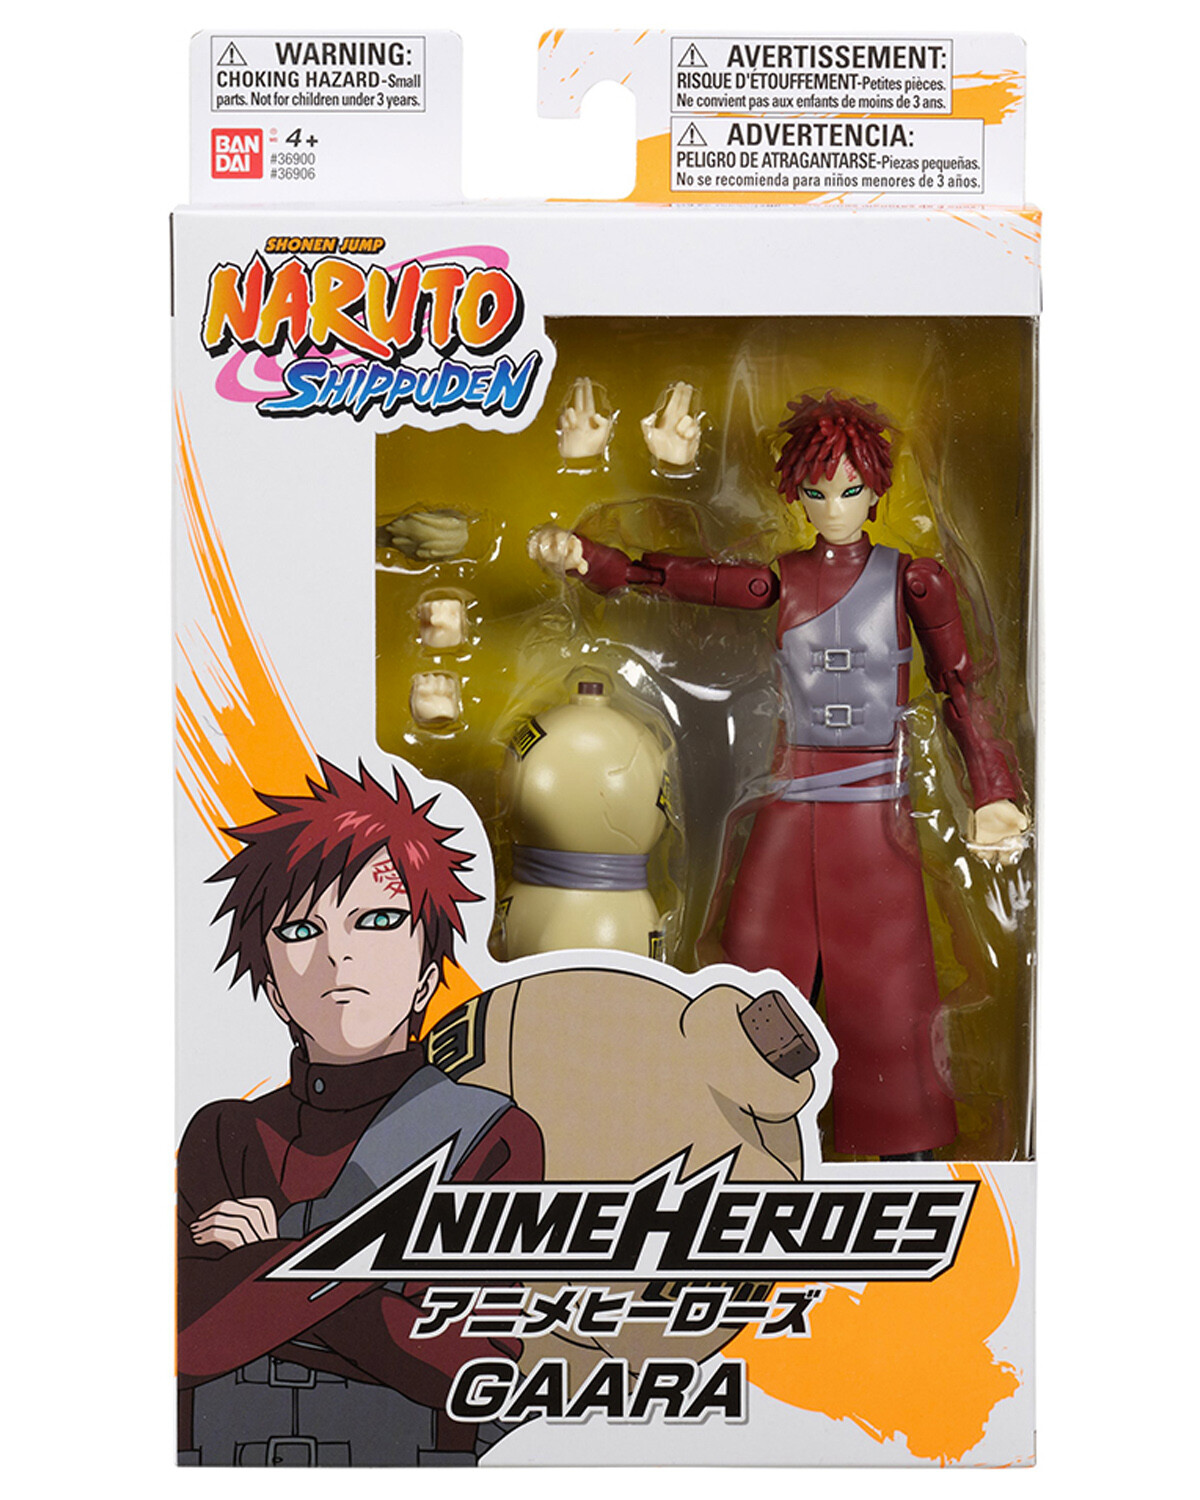 Anime Heroes figura de acción oficial de Naruto Shippuden de